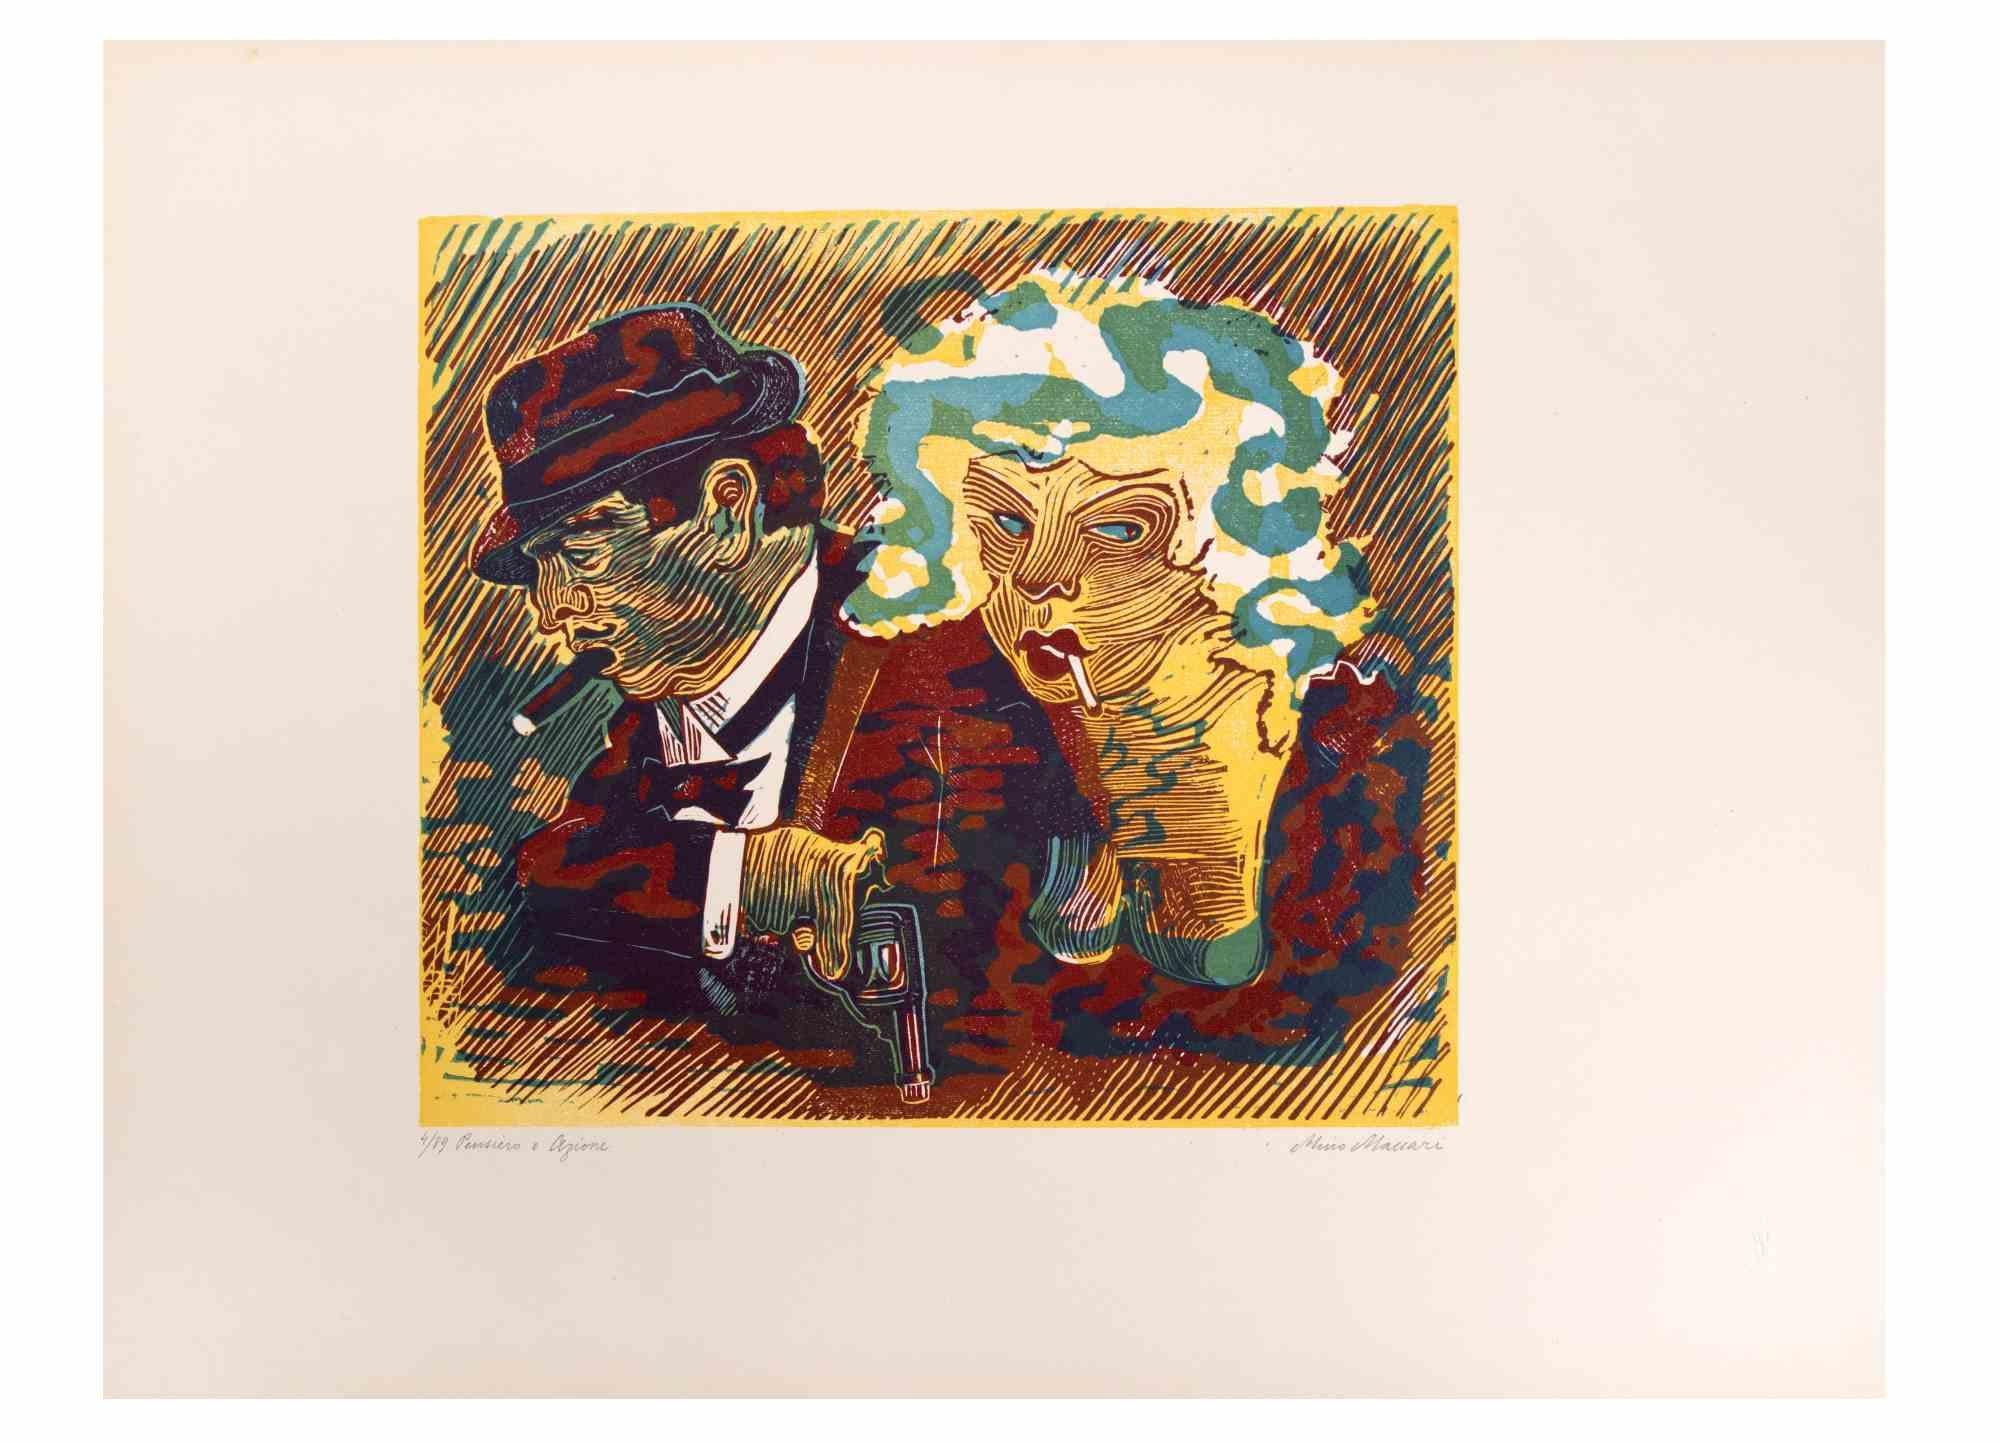 Imagination and Action ist ein Kunstwerk von Mino Maccari (1924-1989) aus der Mitte des 20. Jahrhunderts.

Farbiger Holzschnitt auf Papier. Unten handsigniert, nummeriert 4/89 Exemplare und am linken Rand betitelt.

Gute Bedingungen.

Mino Maccari